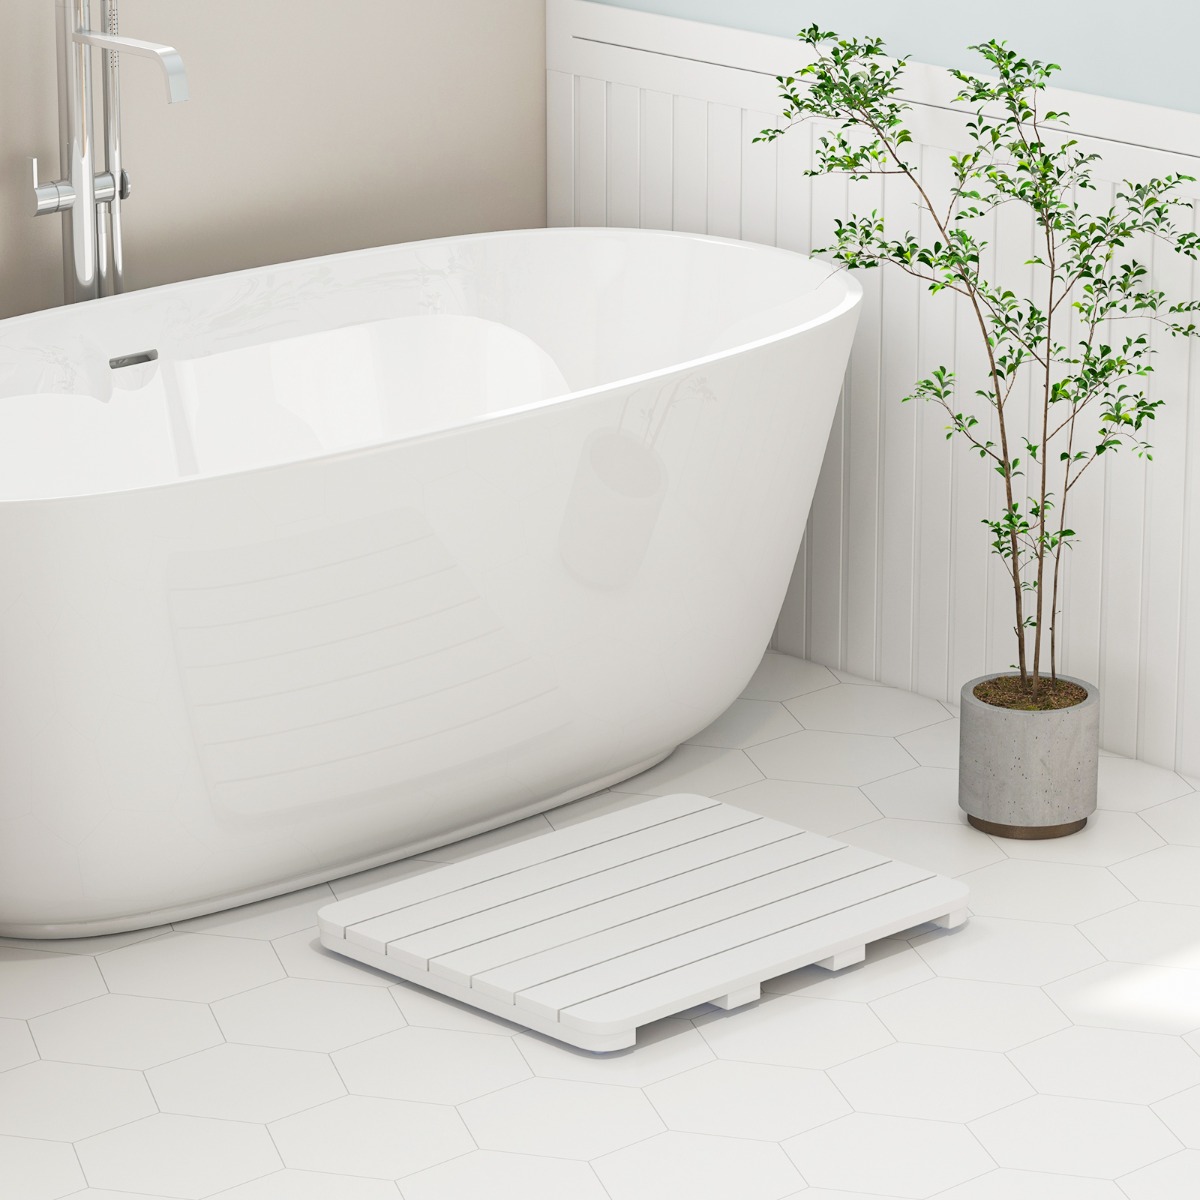 60 x 48 cm Toilettenmatte aus Hips Holz-Design Badematte bis 150kg Belastbar Badvorleger Weiß von Costway